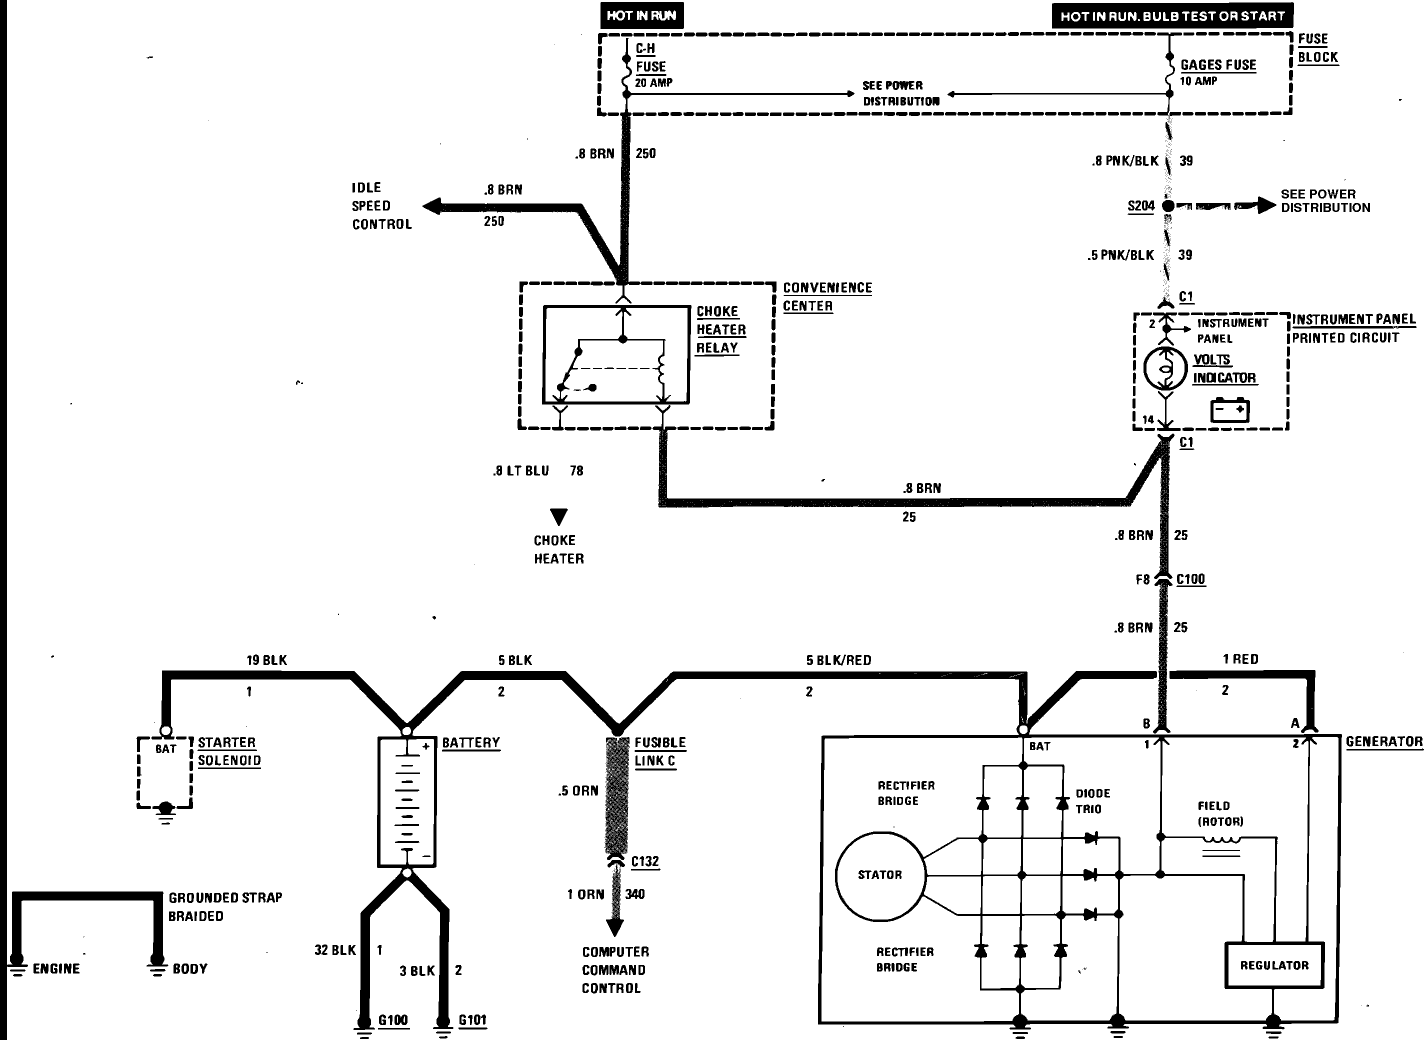 84 voltage regulator wiring issue - Third Generation F ... 1951 chevy voltage regulator wiring diagram chevy 